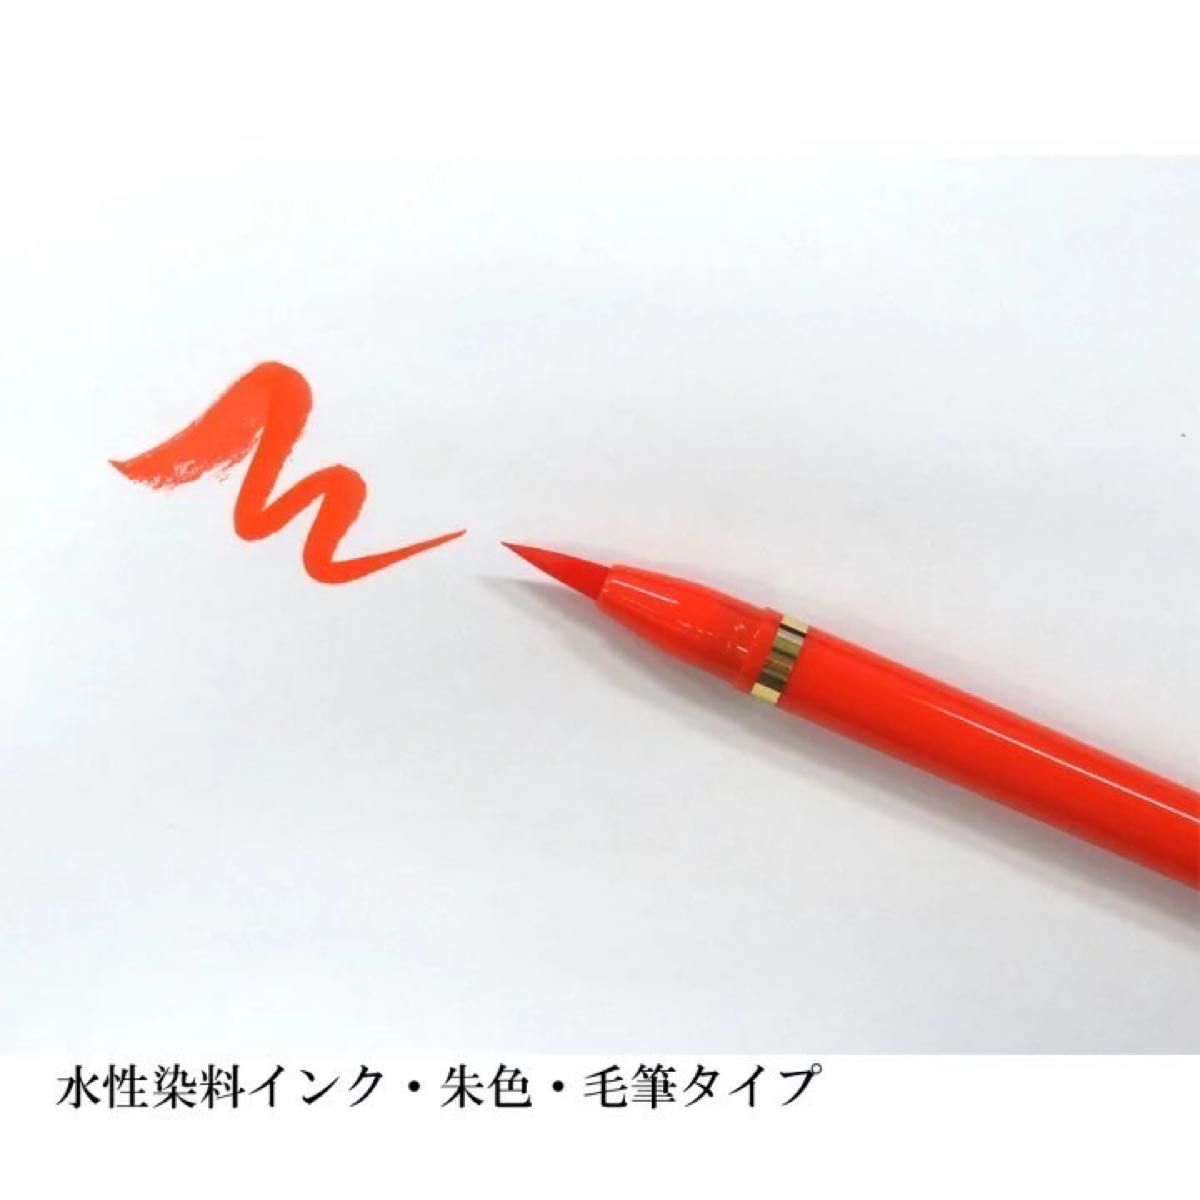 あかしや 筆ペン あかしや筆 中字 朱色 SAM-350R 2本セット